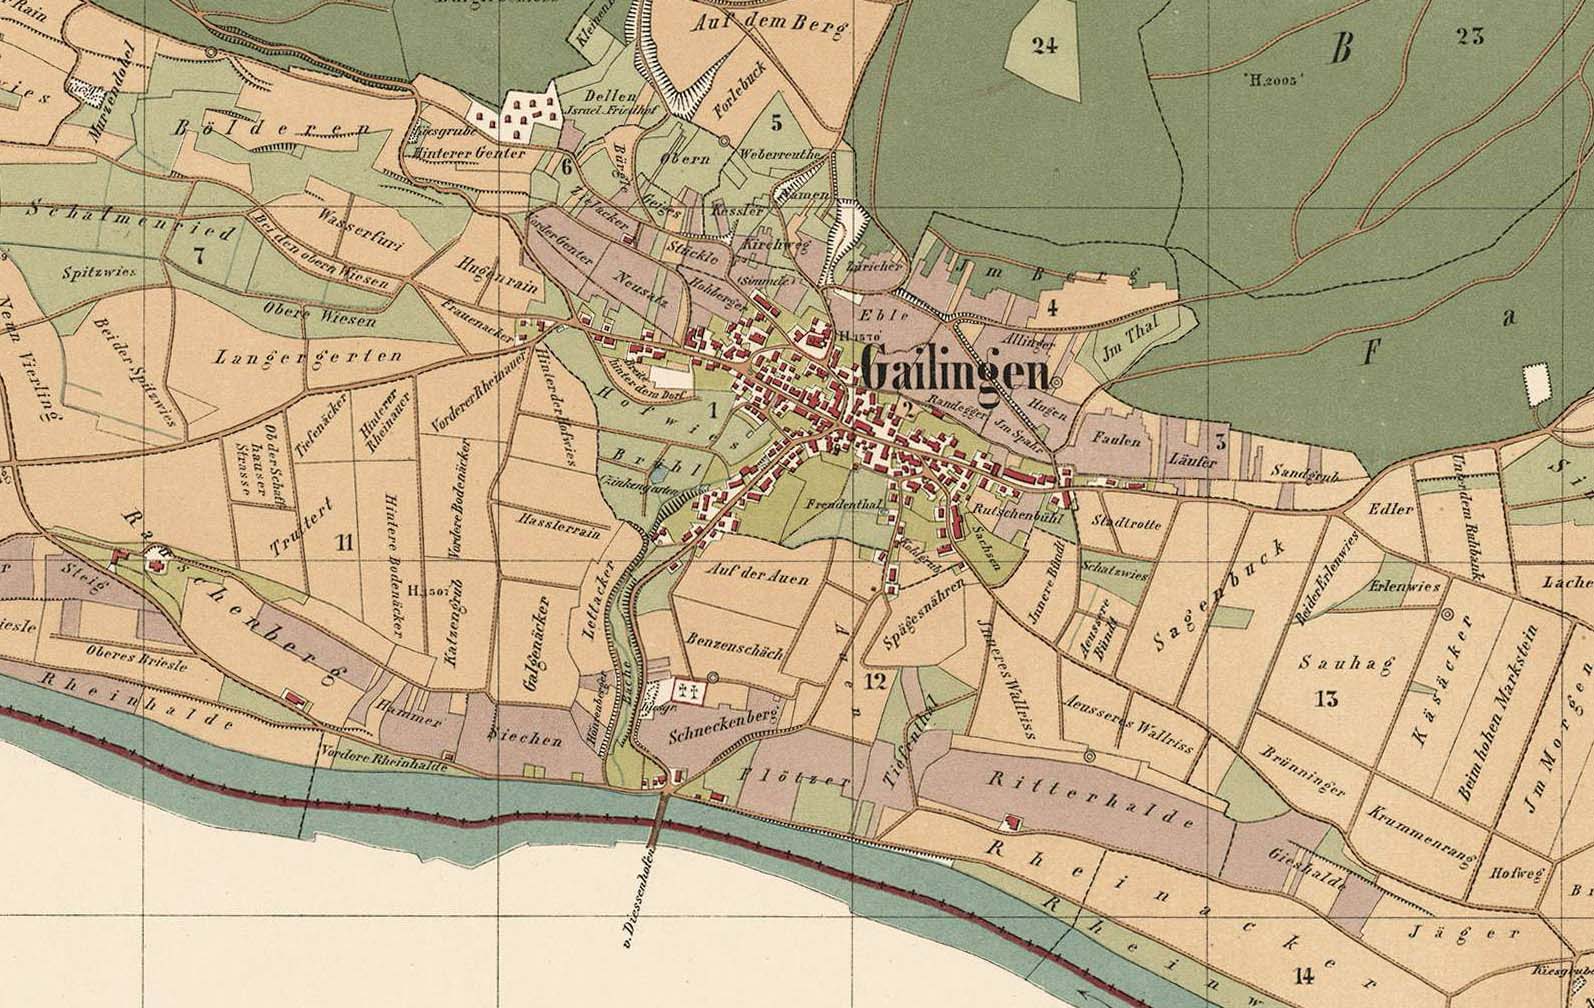 Gailingen auf der Badischen Gemarkungskarte, 1877/79, oben der jüdische Friedhof, Quelle: Landesarchiv BW, GLAK H-1 Nr. 528 1877 